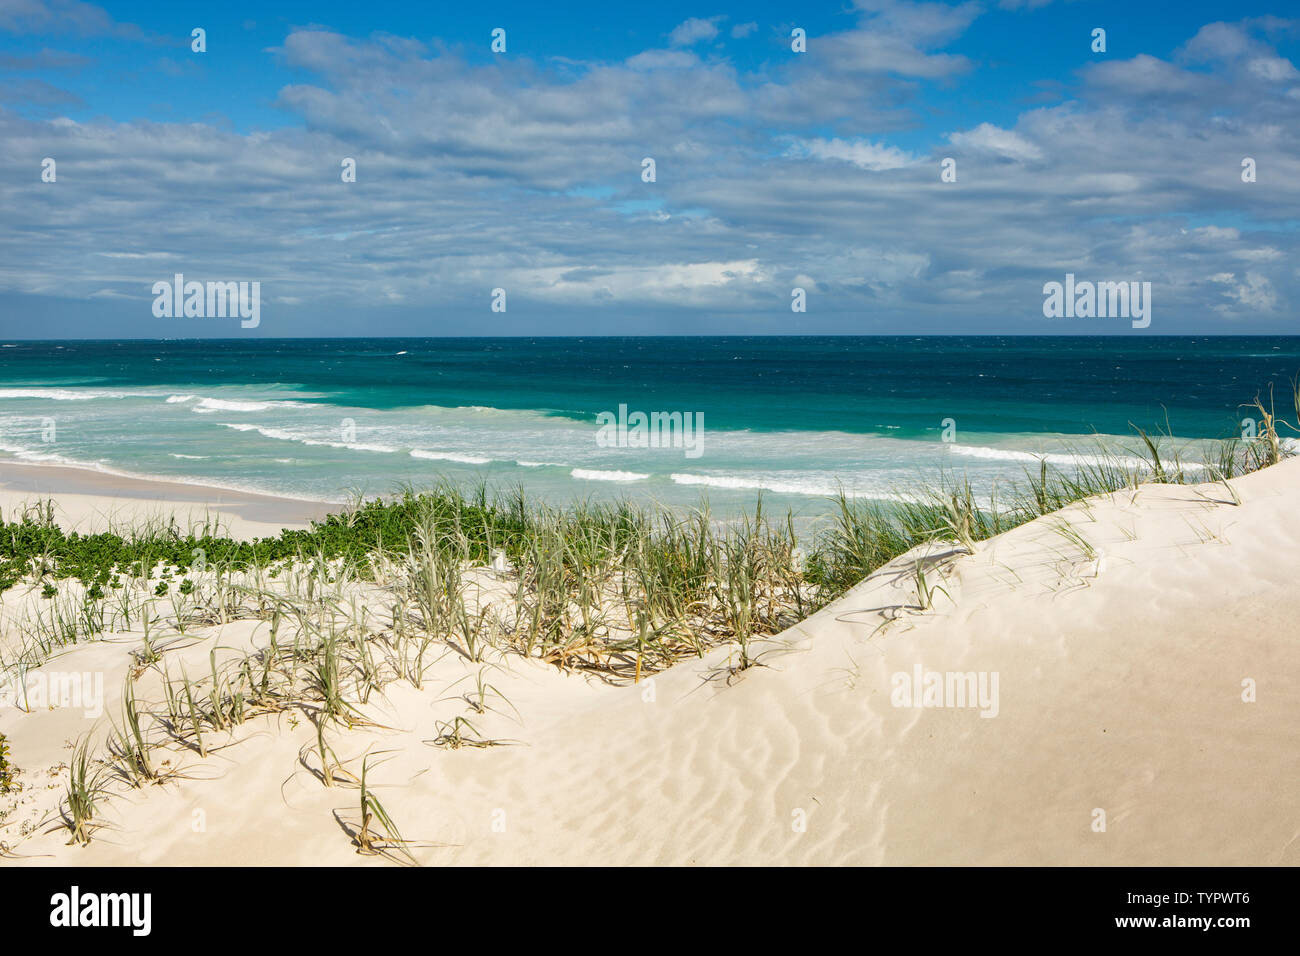 Amplio ángulo de visión de una playa de arena blanca con altas dunas en Australia occidental con grandes olas rompiendo en la playa Foto de stock